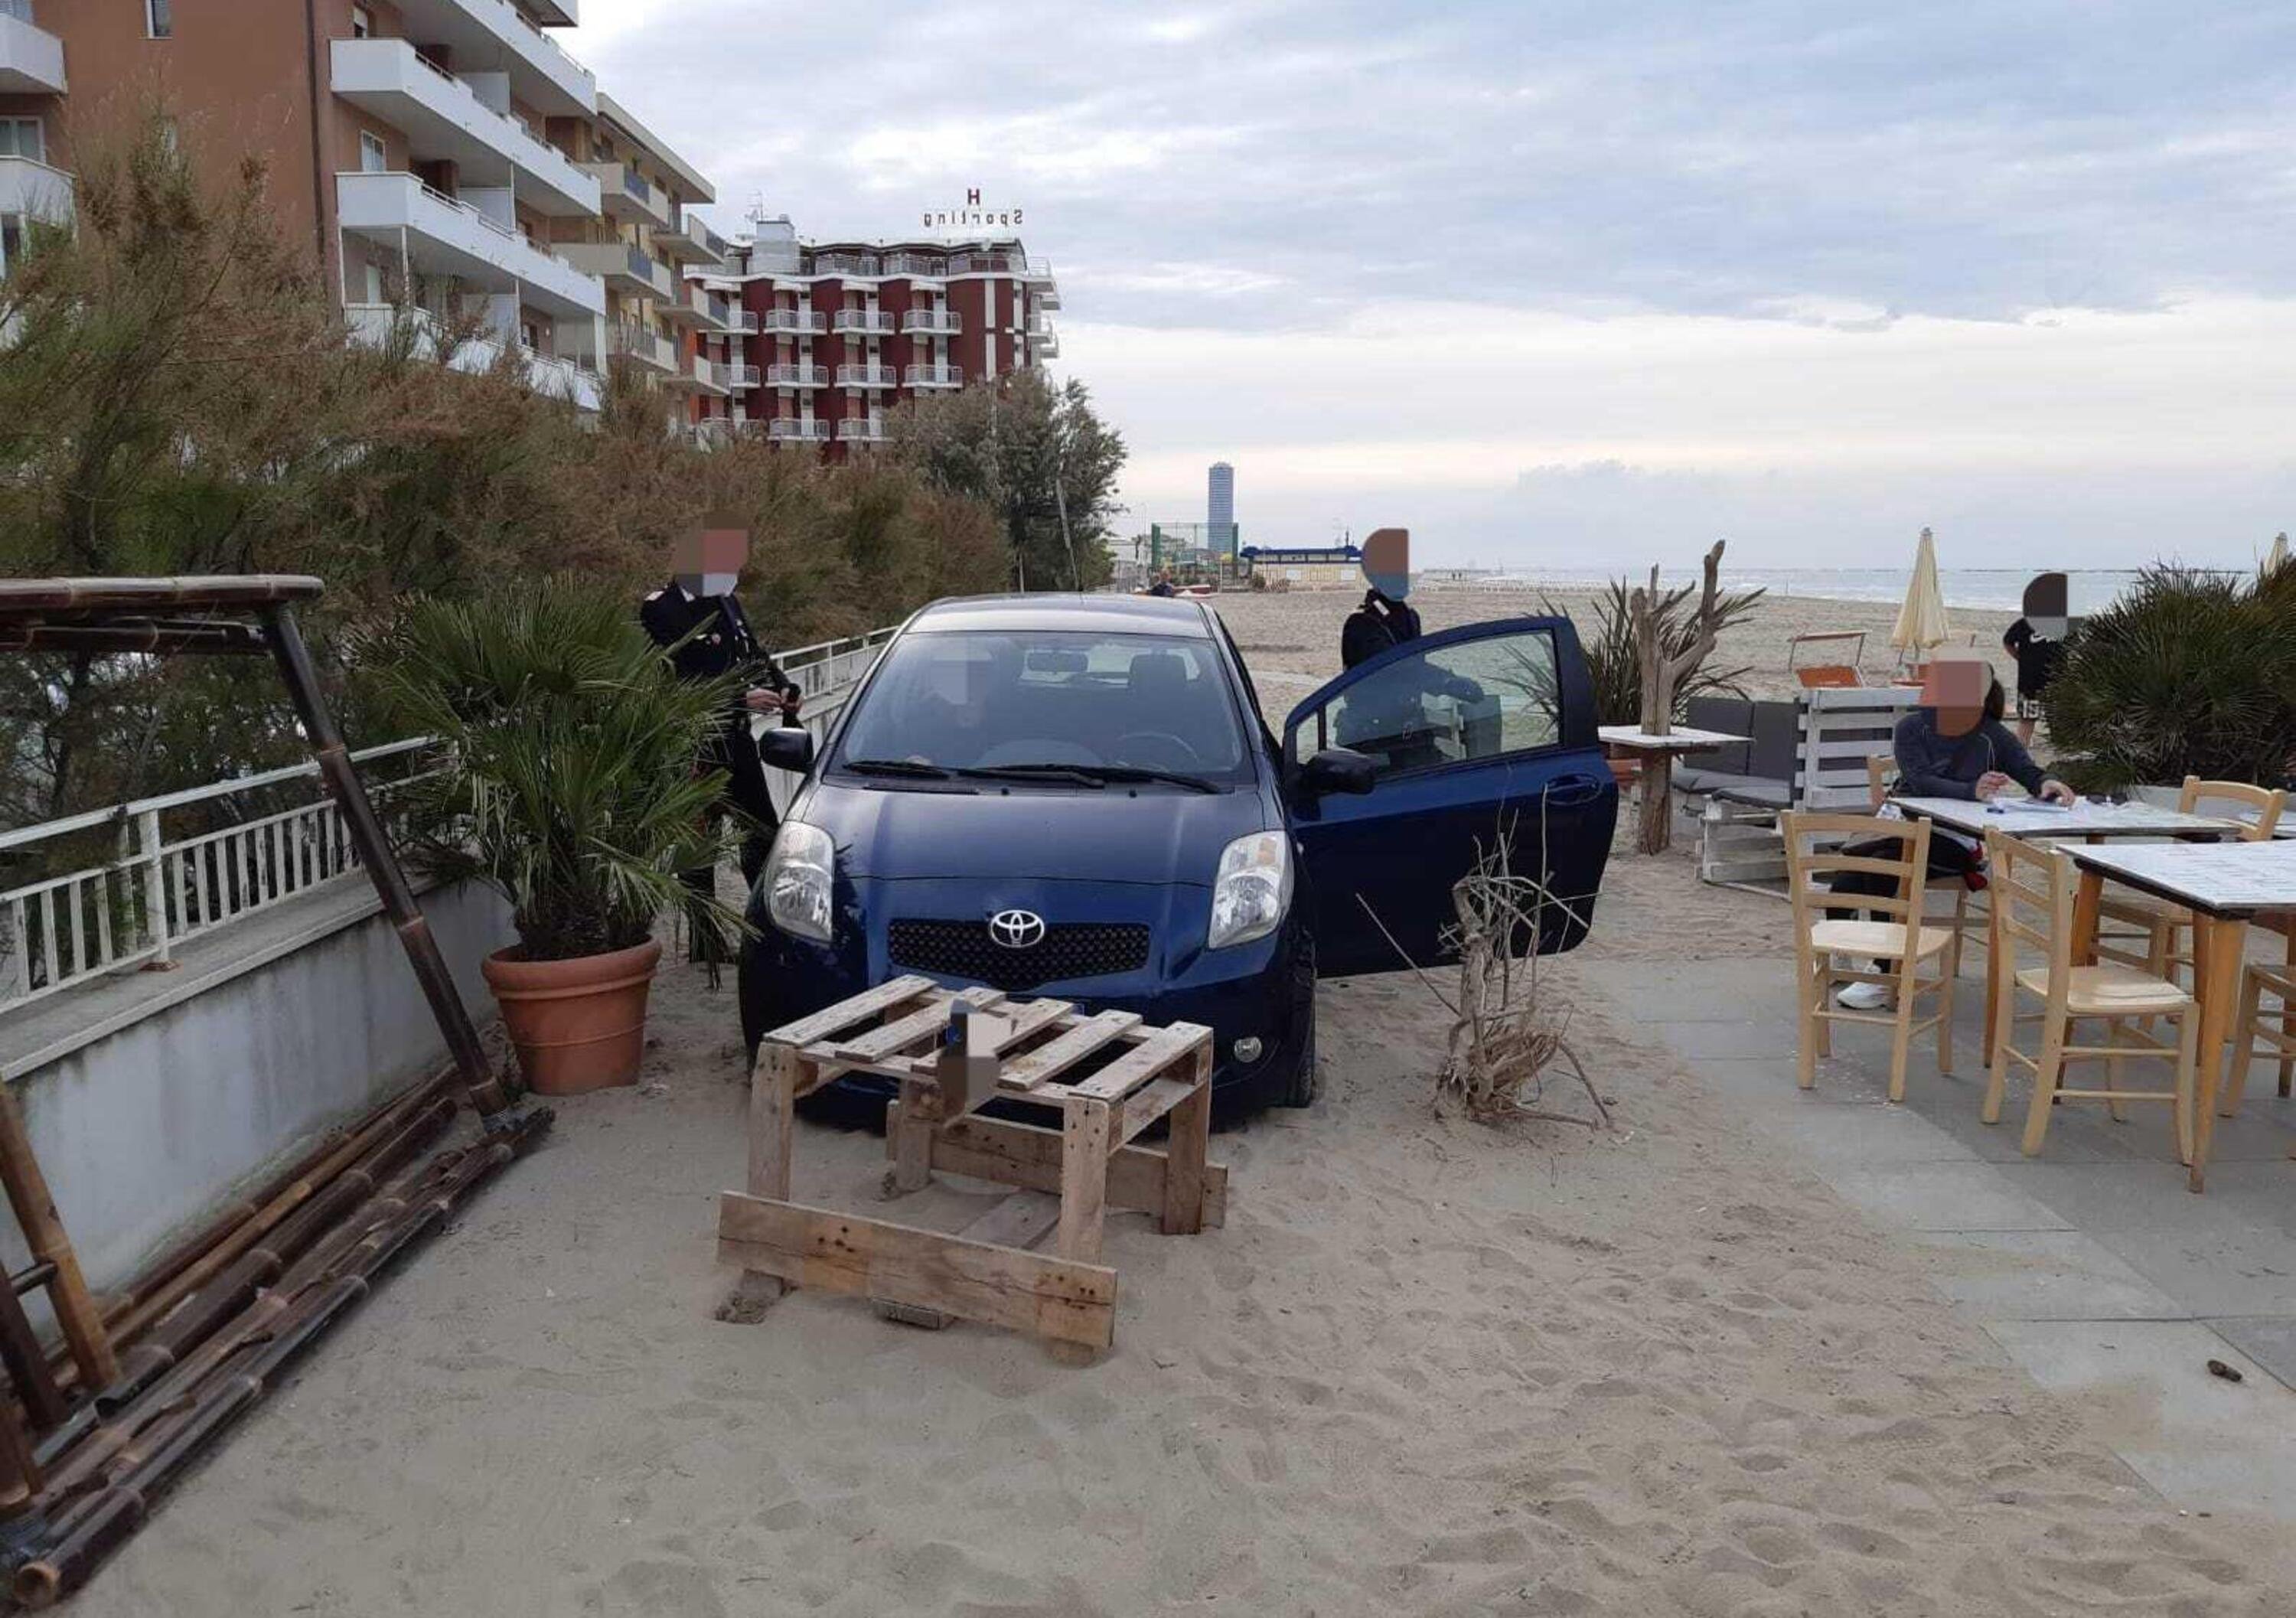 In spiaggia con la Yaris a Cesenatico: era ubriaca cinque volte oltre il limite